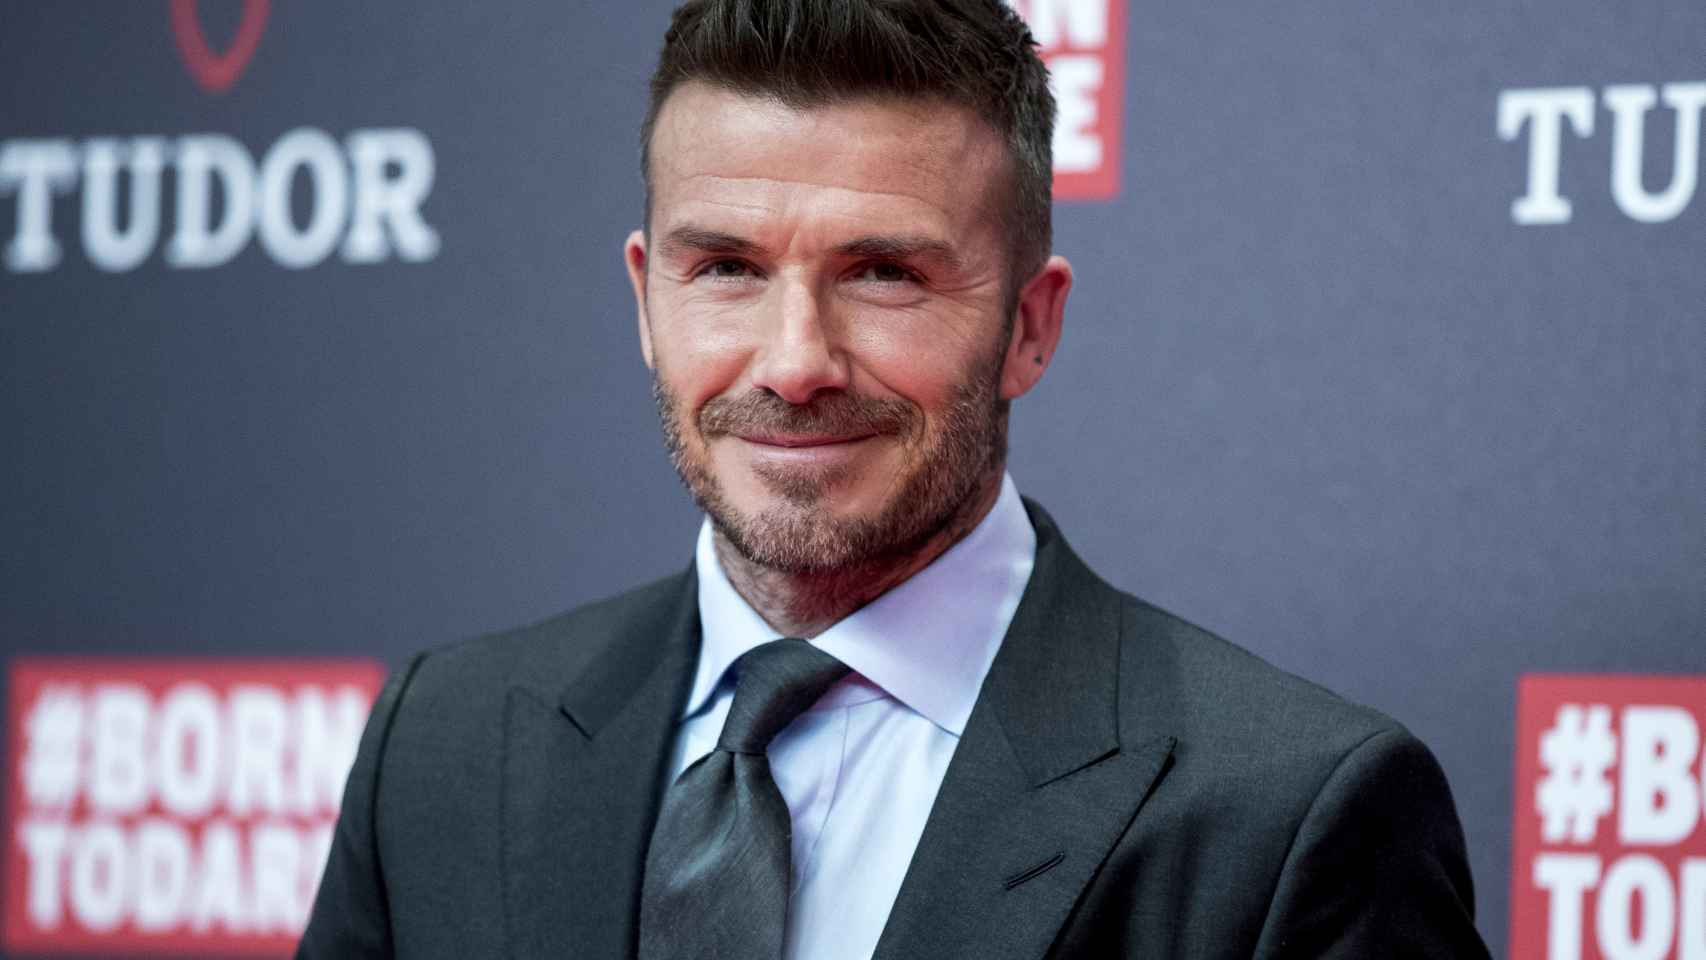 David Beckham durante el acto publicitario de la firma Tudor.